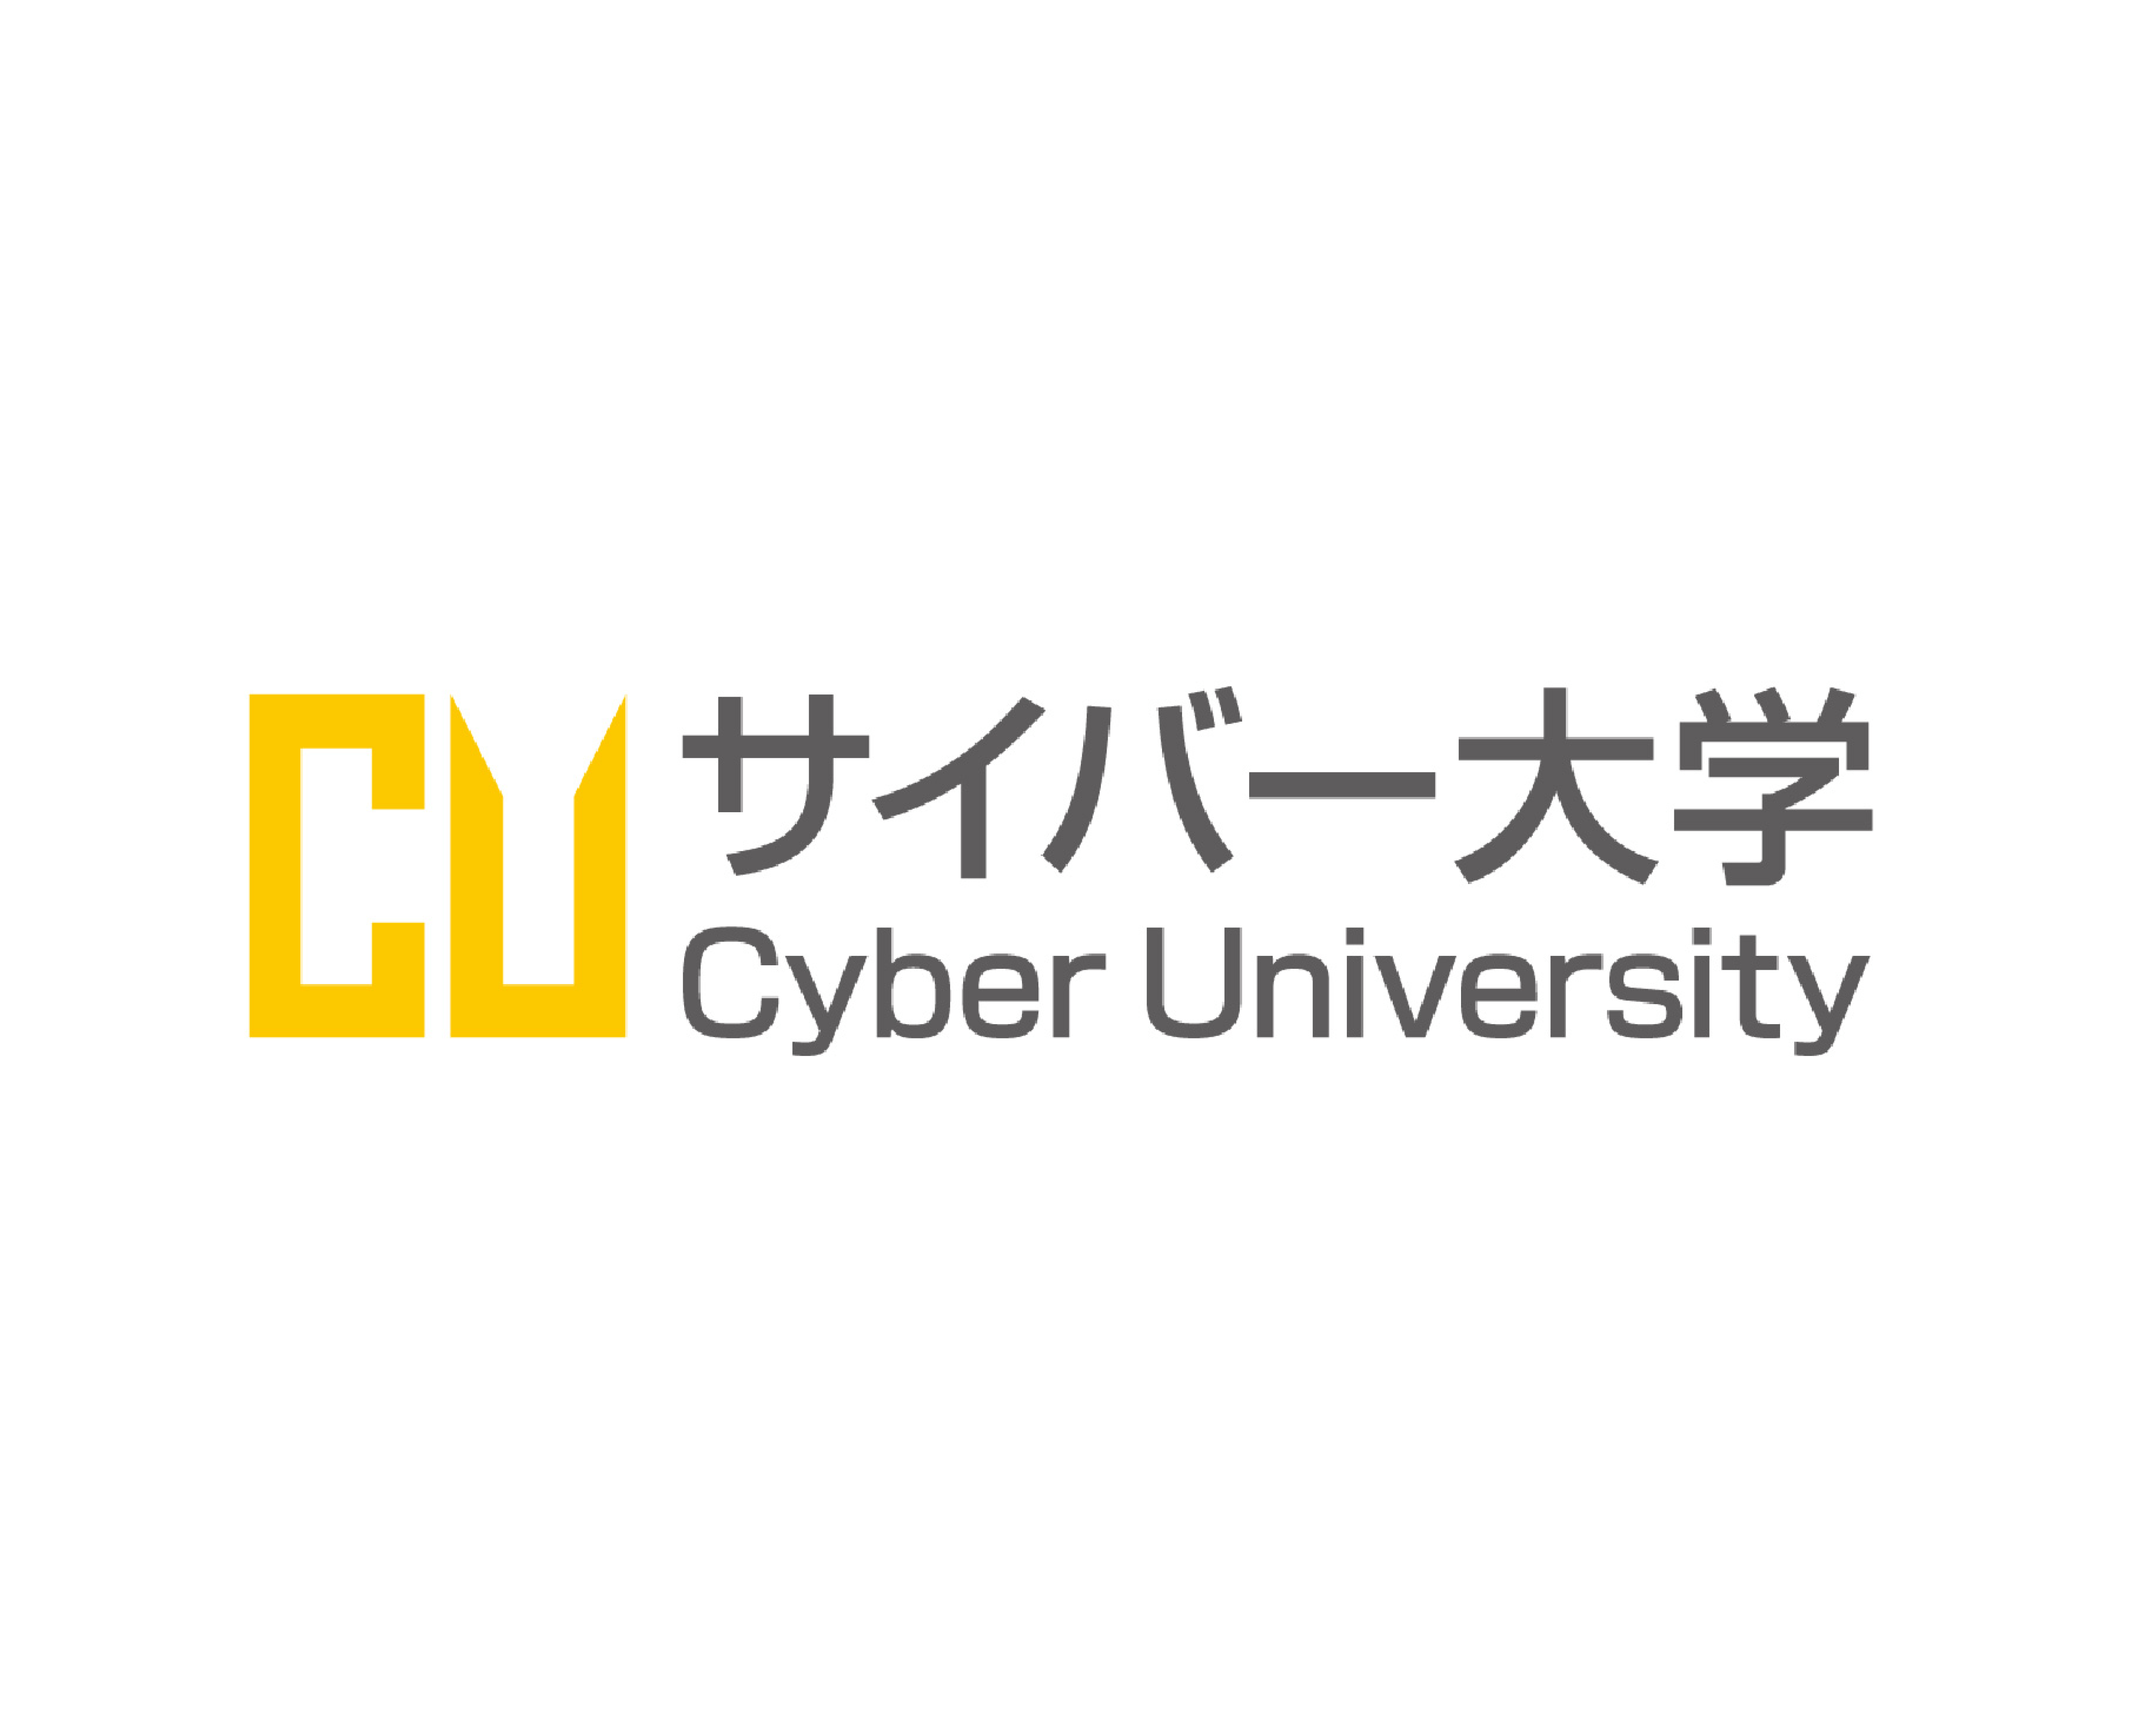 Logo of Cyber University for Commune's case studies